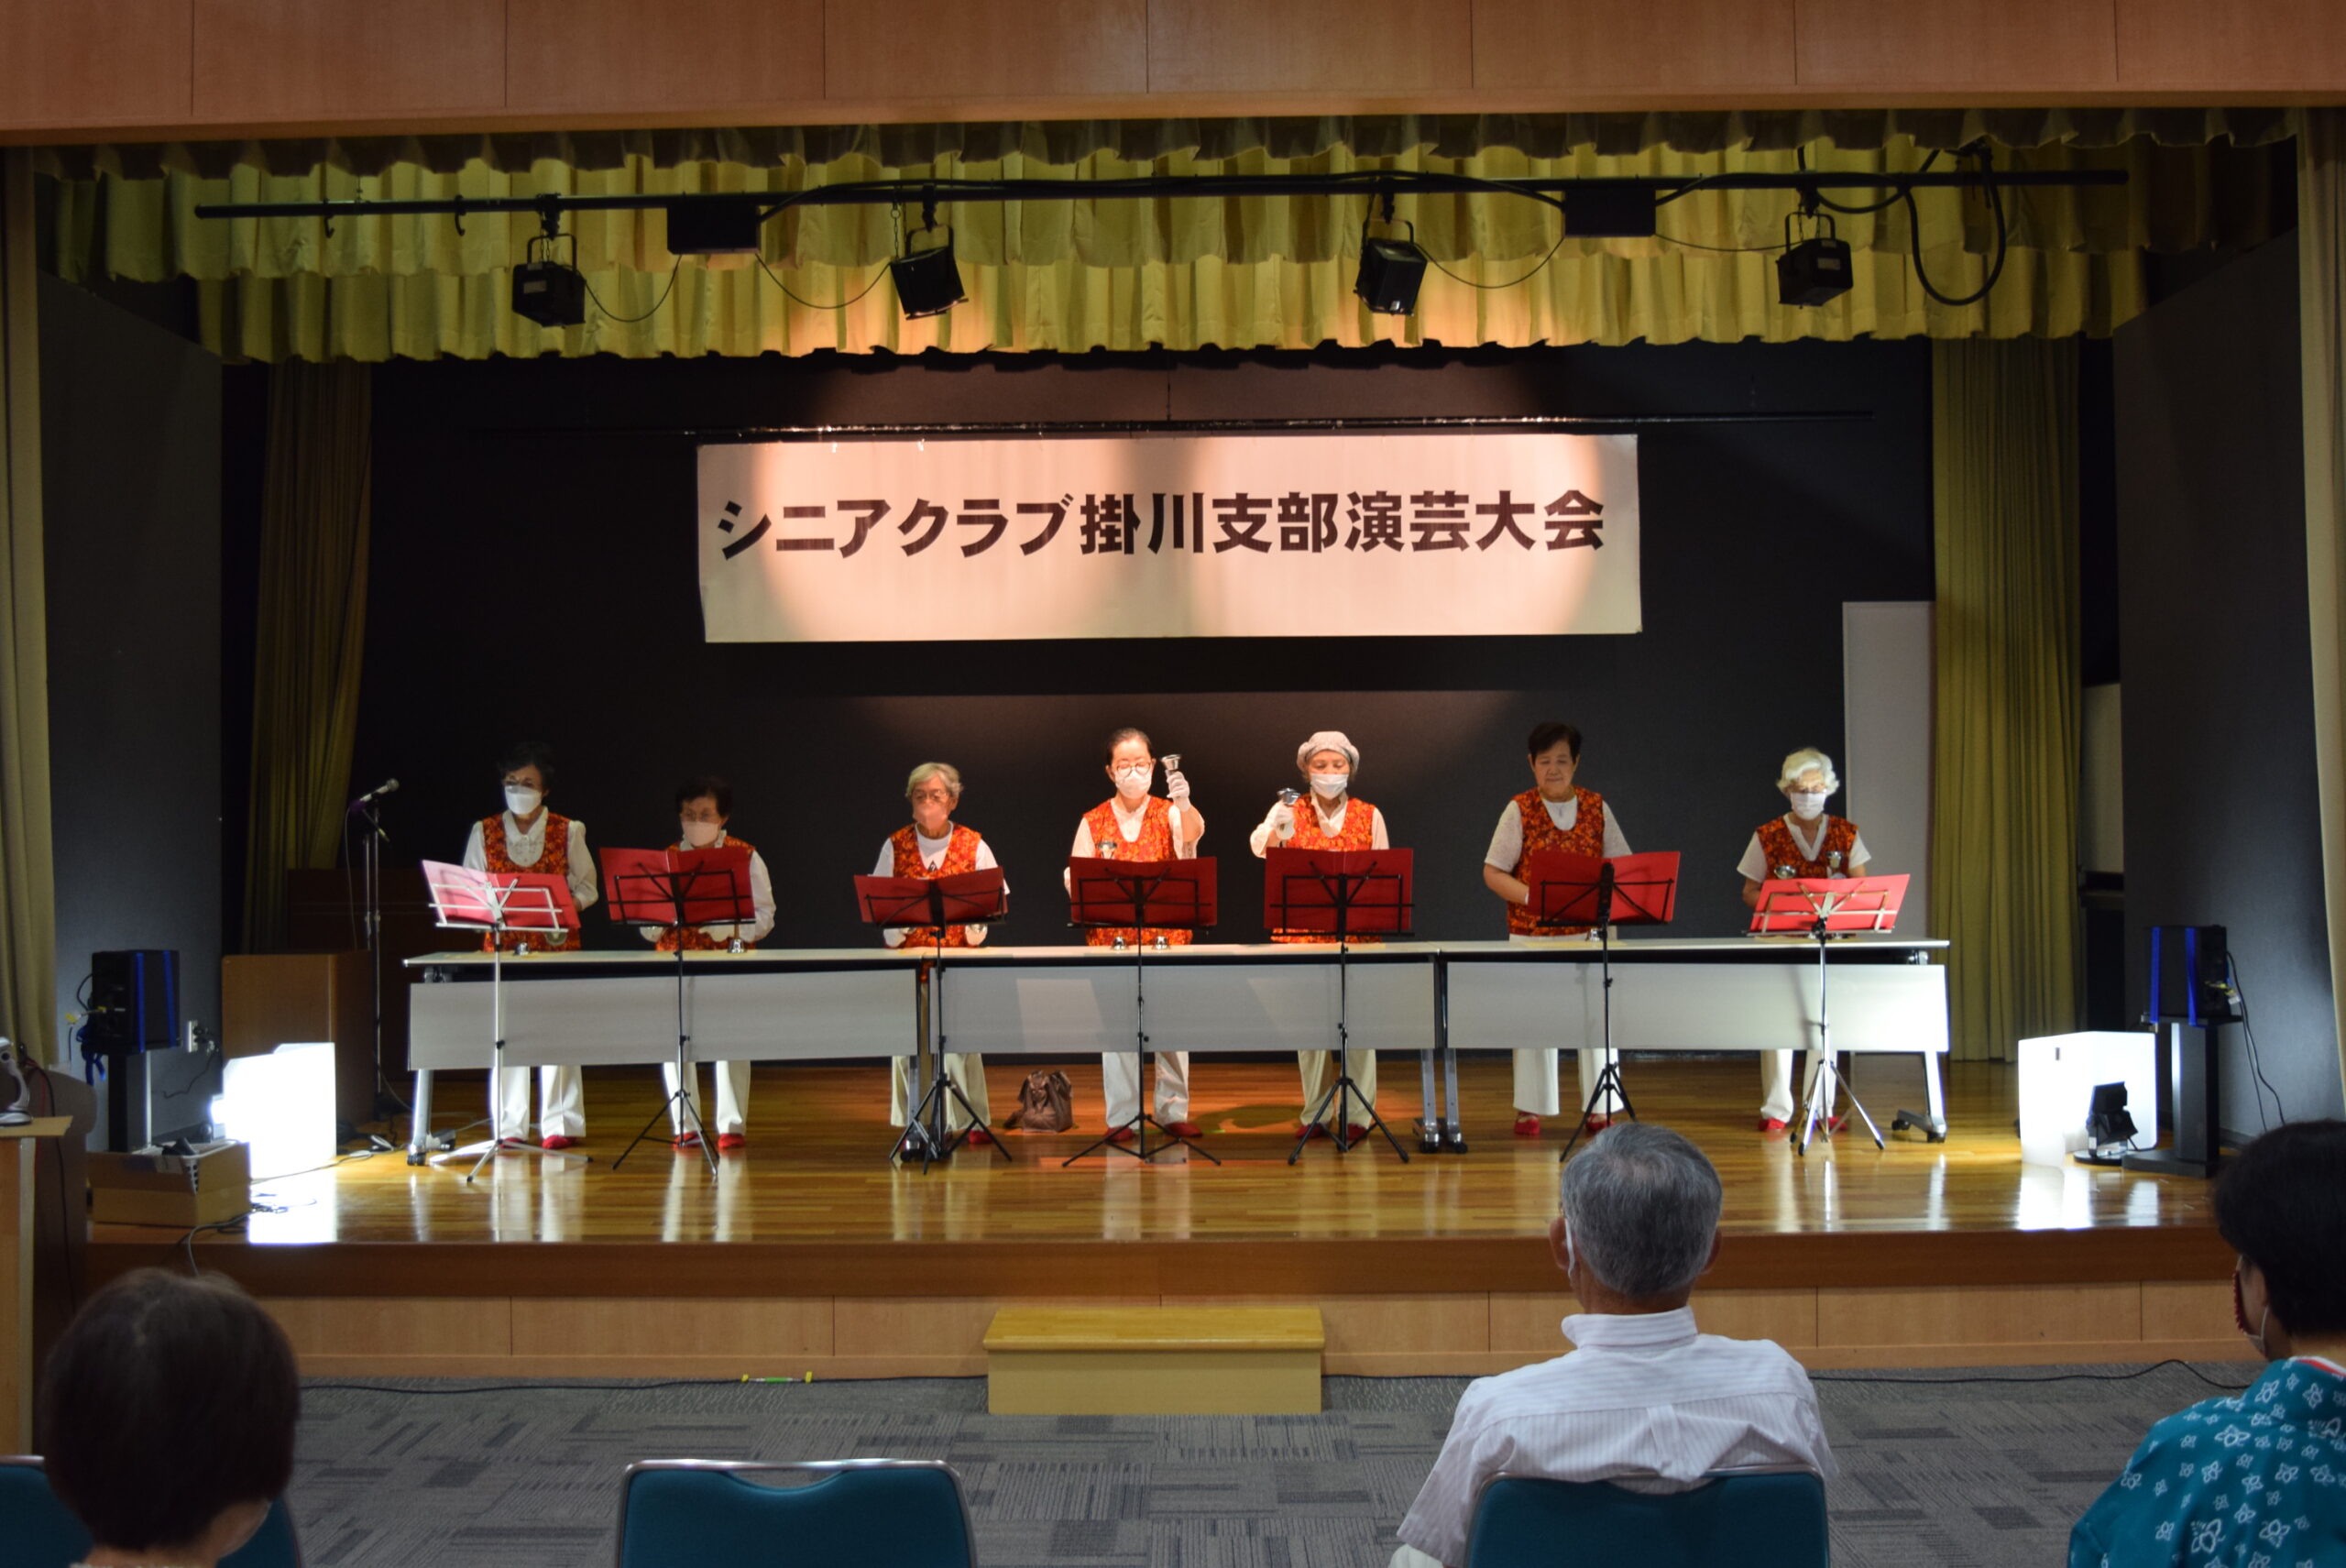 掛川市の老人クラブ会員によるハンドベル演奏